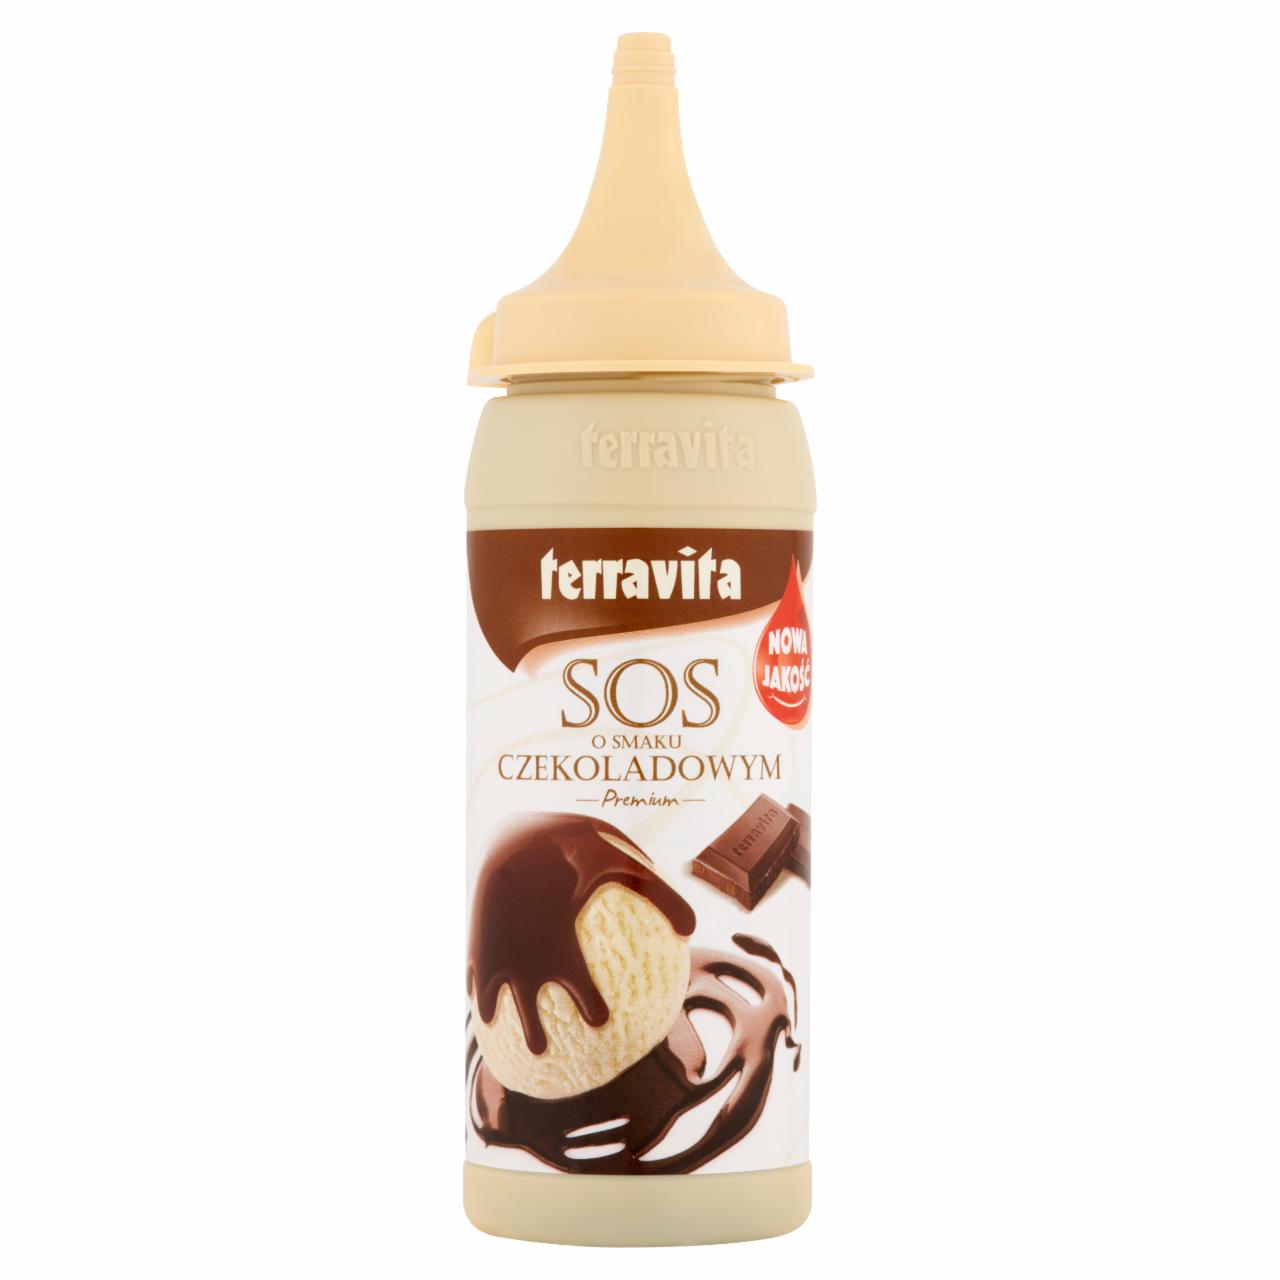 Zdjęcia - Terravita Premium Sos o smaku czekoladowym 200 g